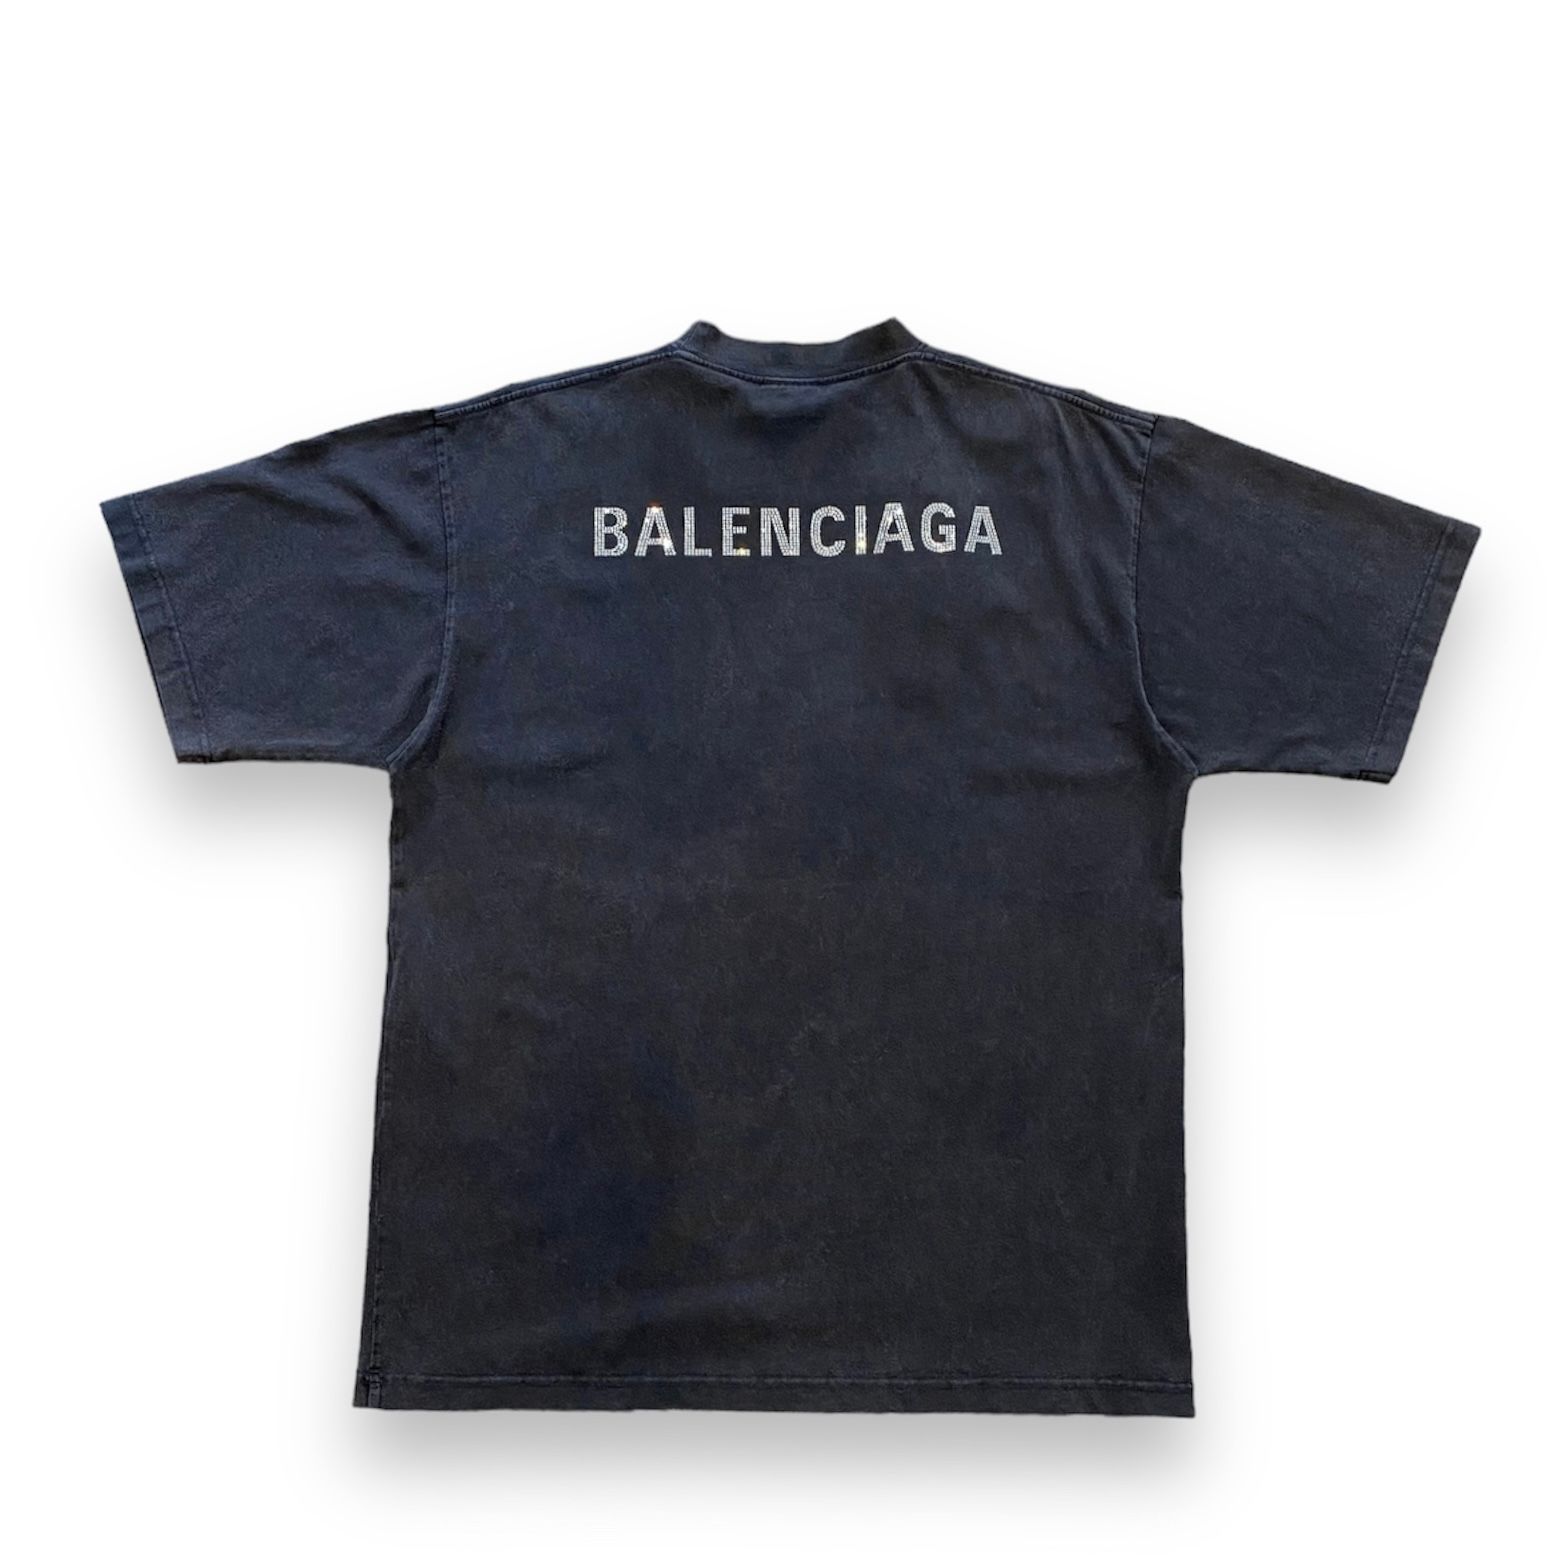 BALENCIAGA - スワロフスキーロゴ Tシャツ / Tシャツ / スワロフスキー